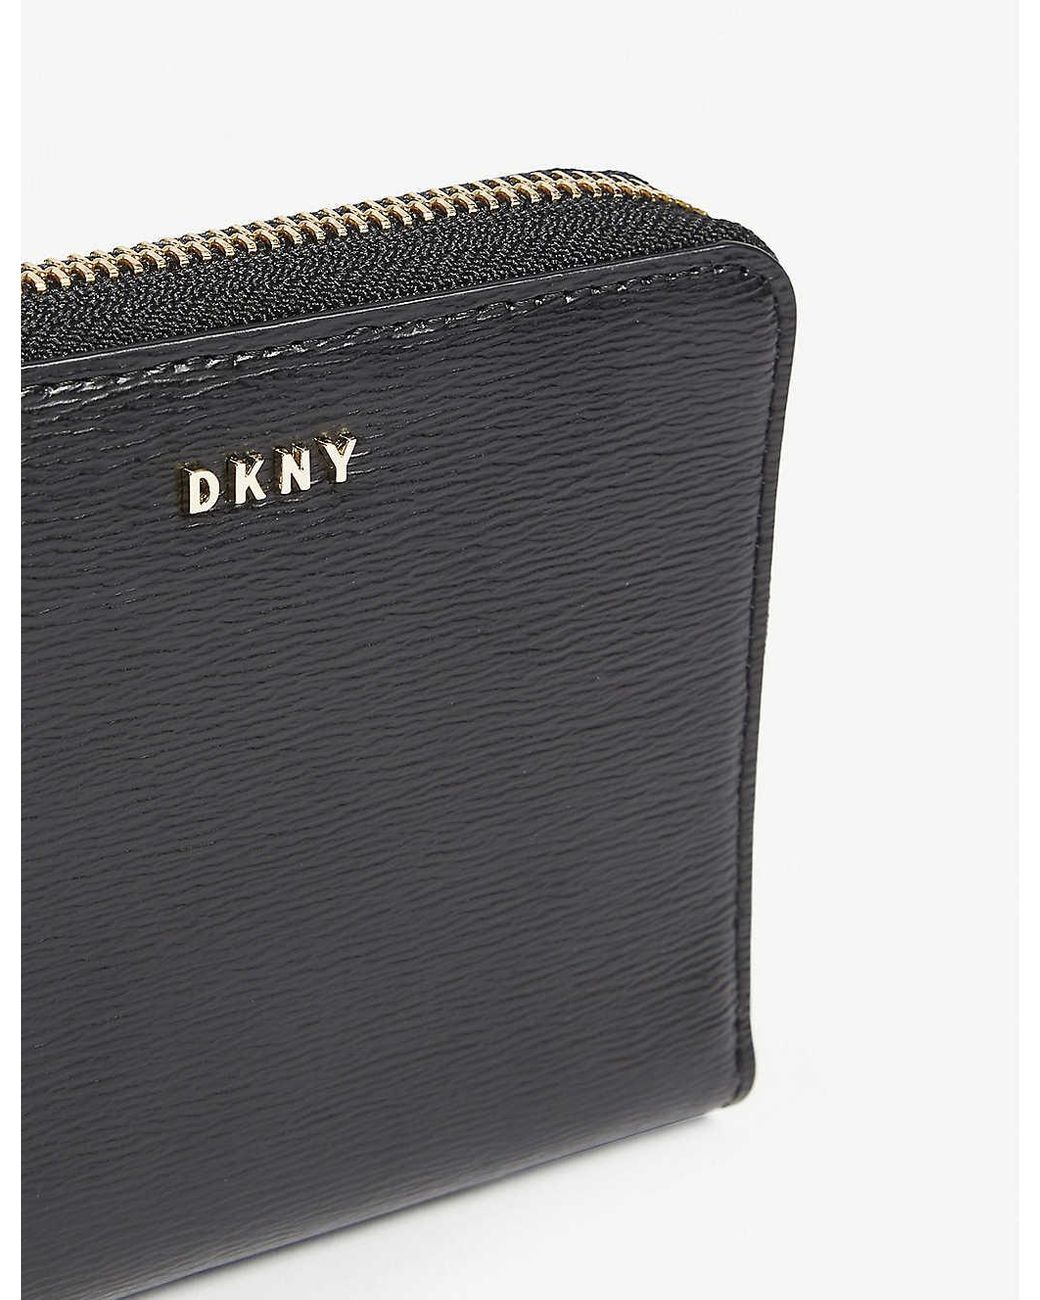 DKNY Purse & Wallet bto.ng